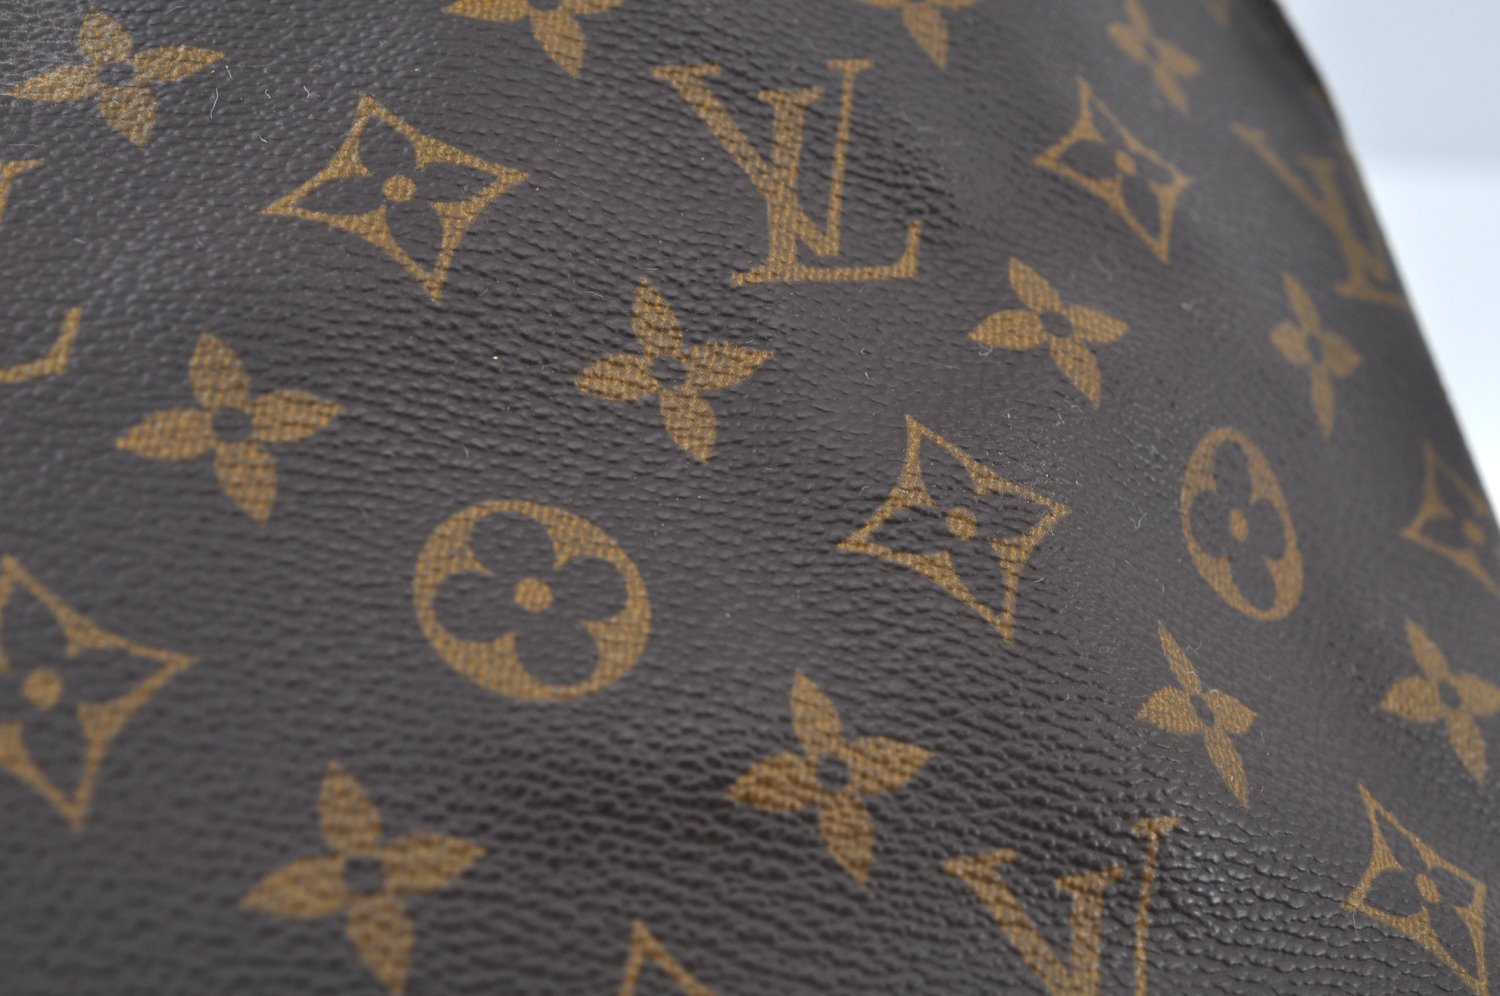 Authentic Louis Vuitton Monogram Alma Hand Bag Purse M51130 LV K9763